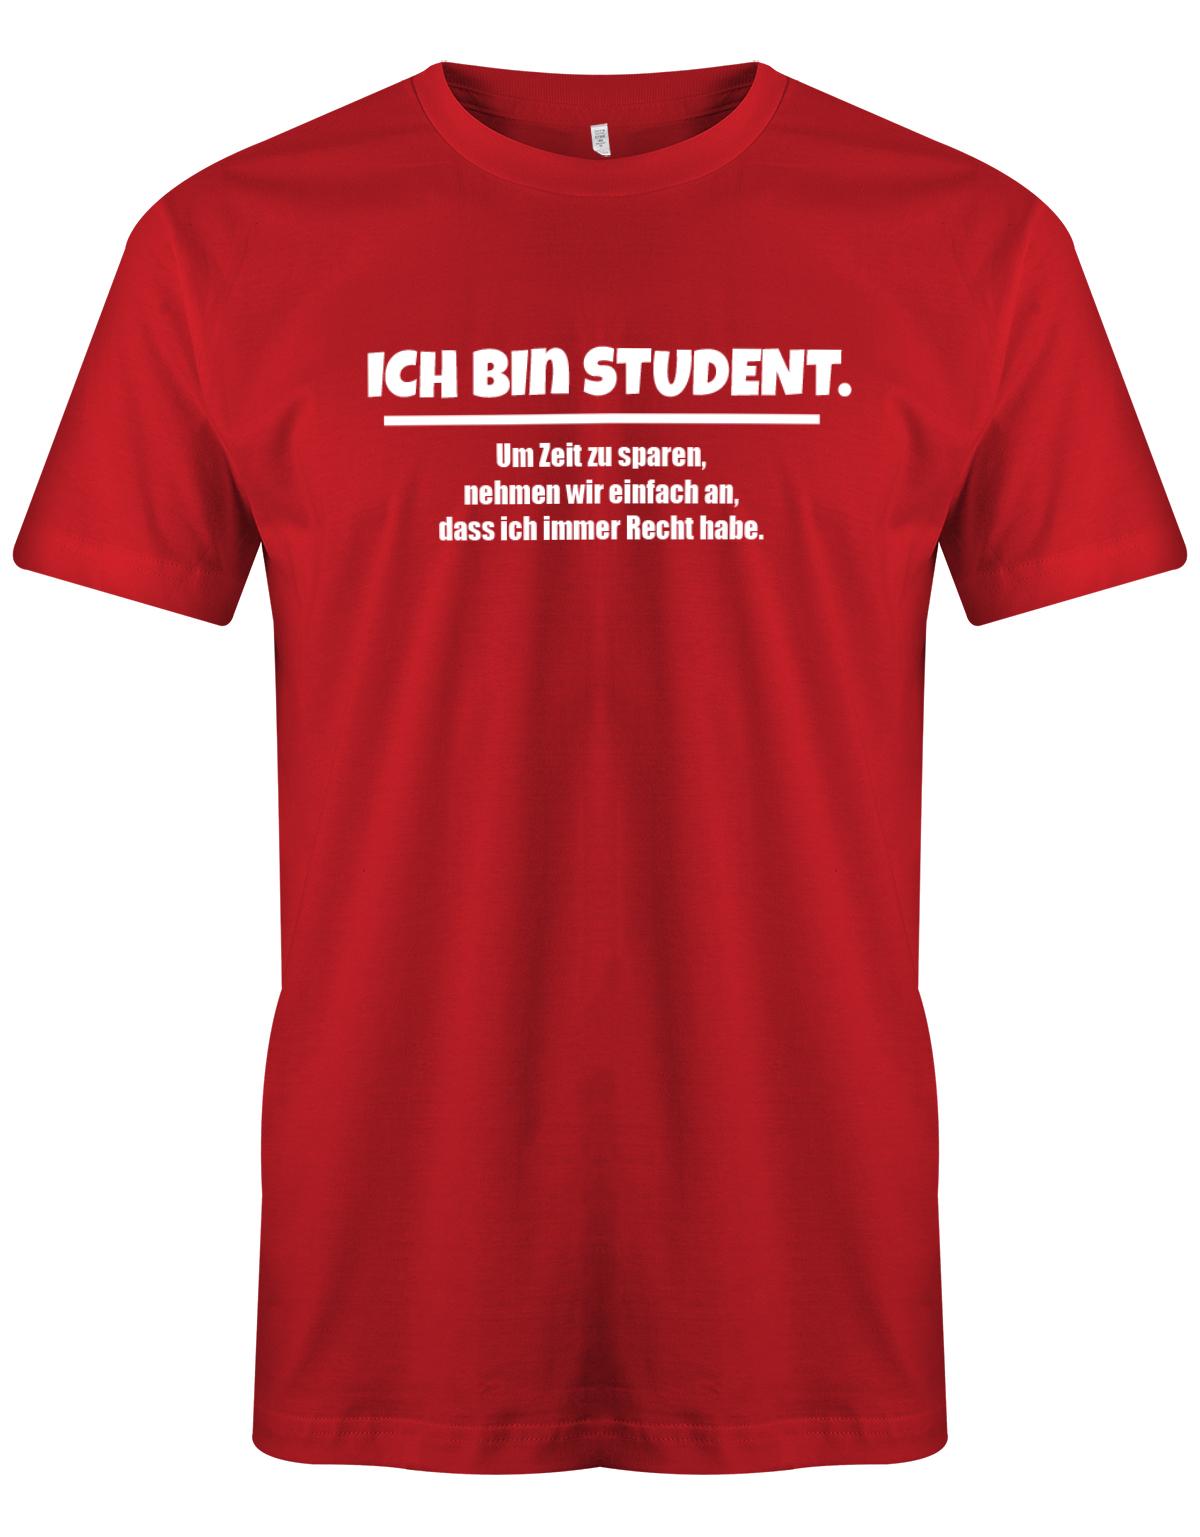 Ich-bin-Student-um-zeot-zu-sparen-habe-ich-recht-Herren-Spr-che-Studium-Shirt-Rot